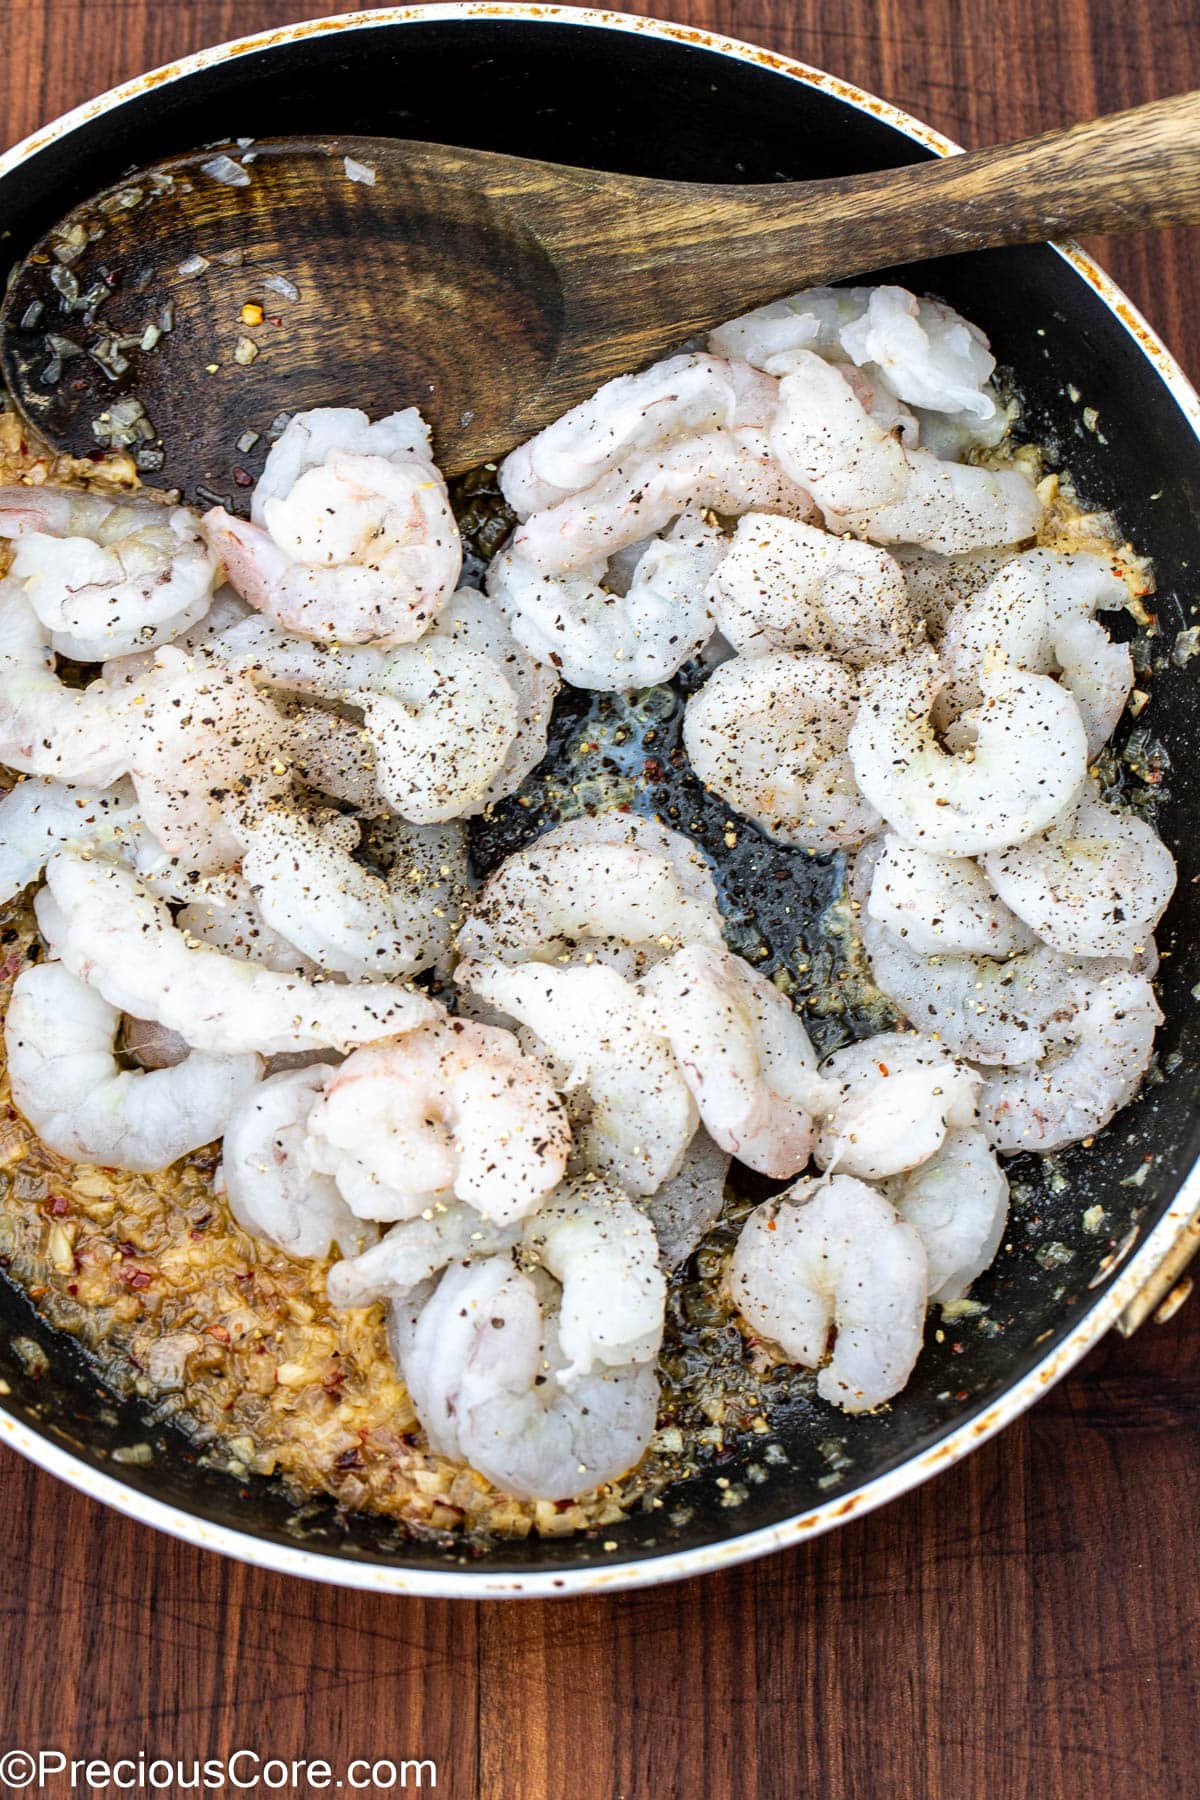 Shrimp in a skillet sprinkled with salt and black pepper.